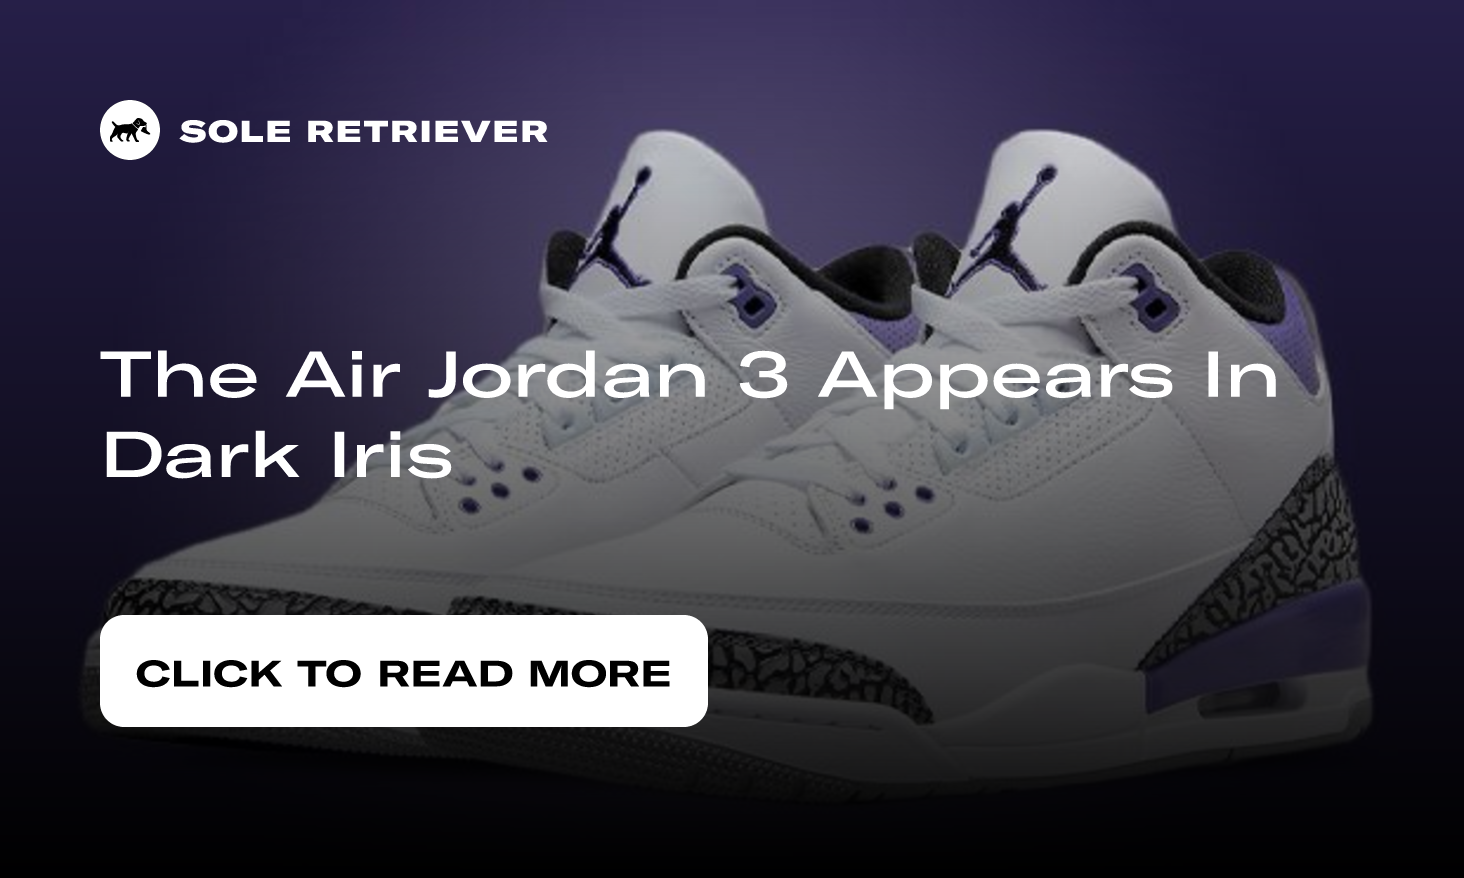 The Air Jordan 3 Appears In Dark Iris